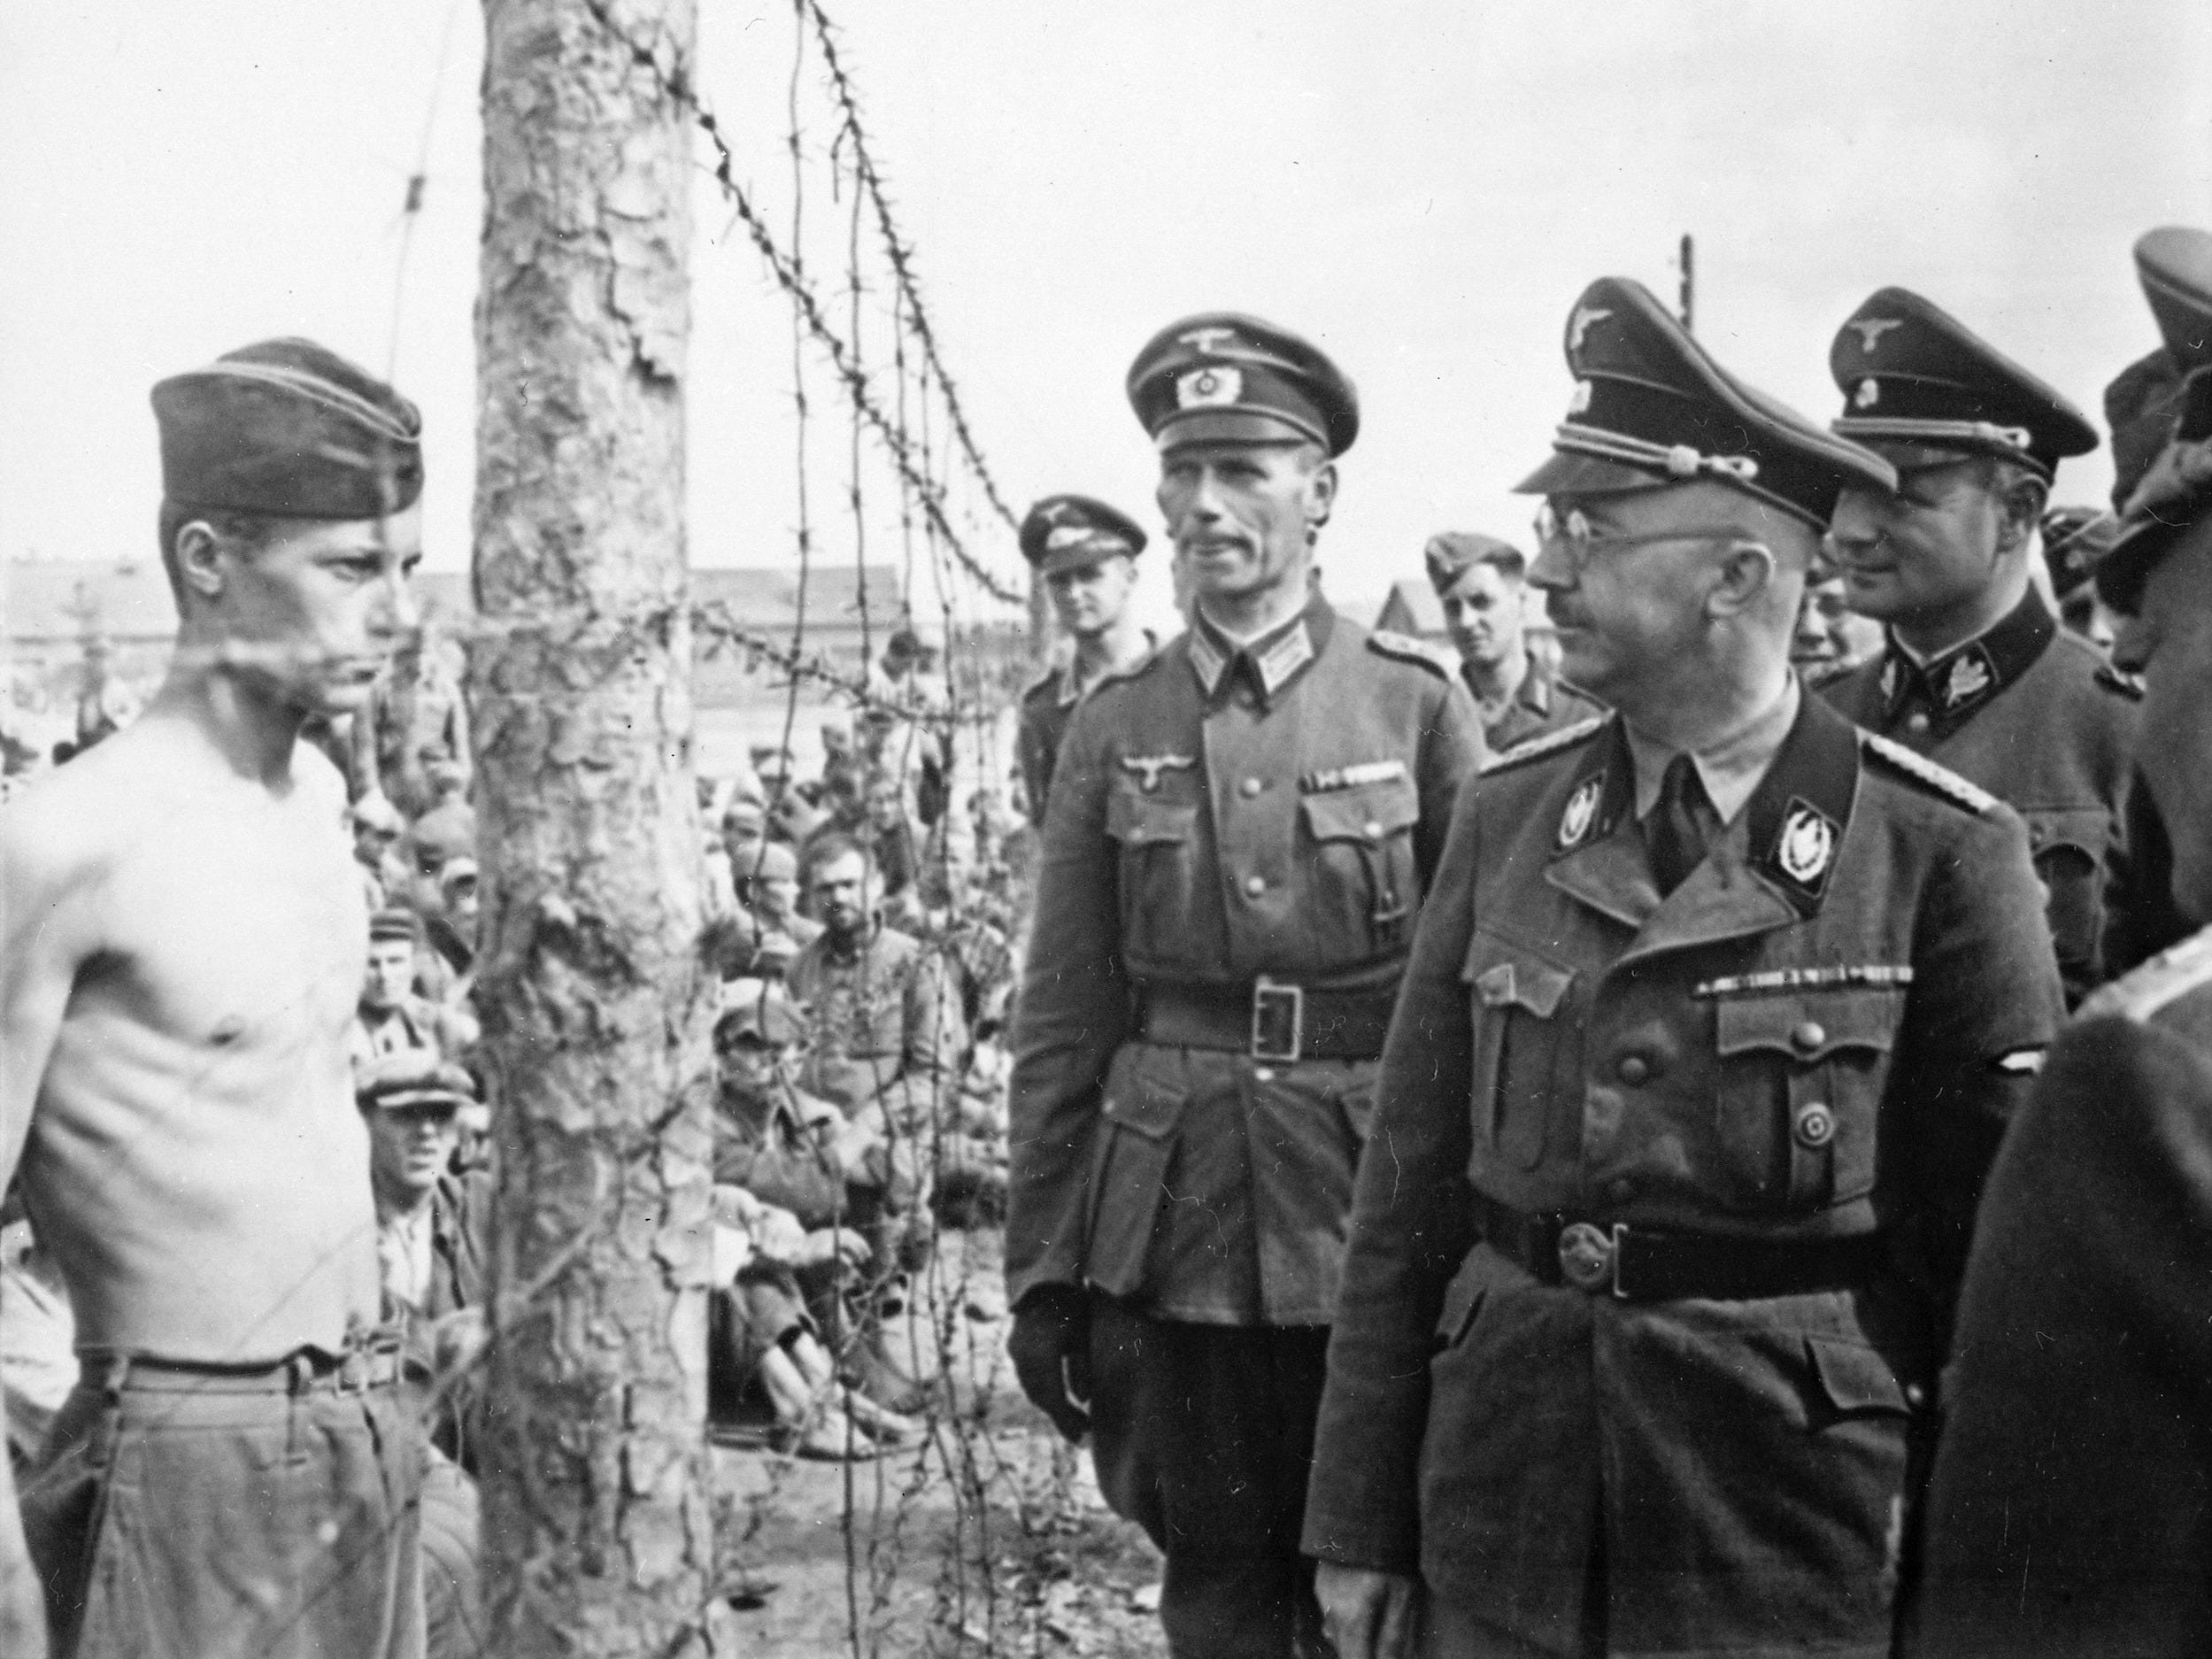 Operation Barbarossa Heinrich Himmler